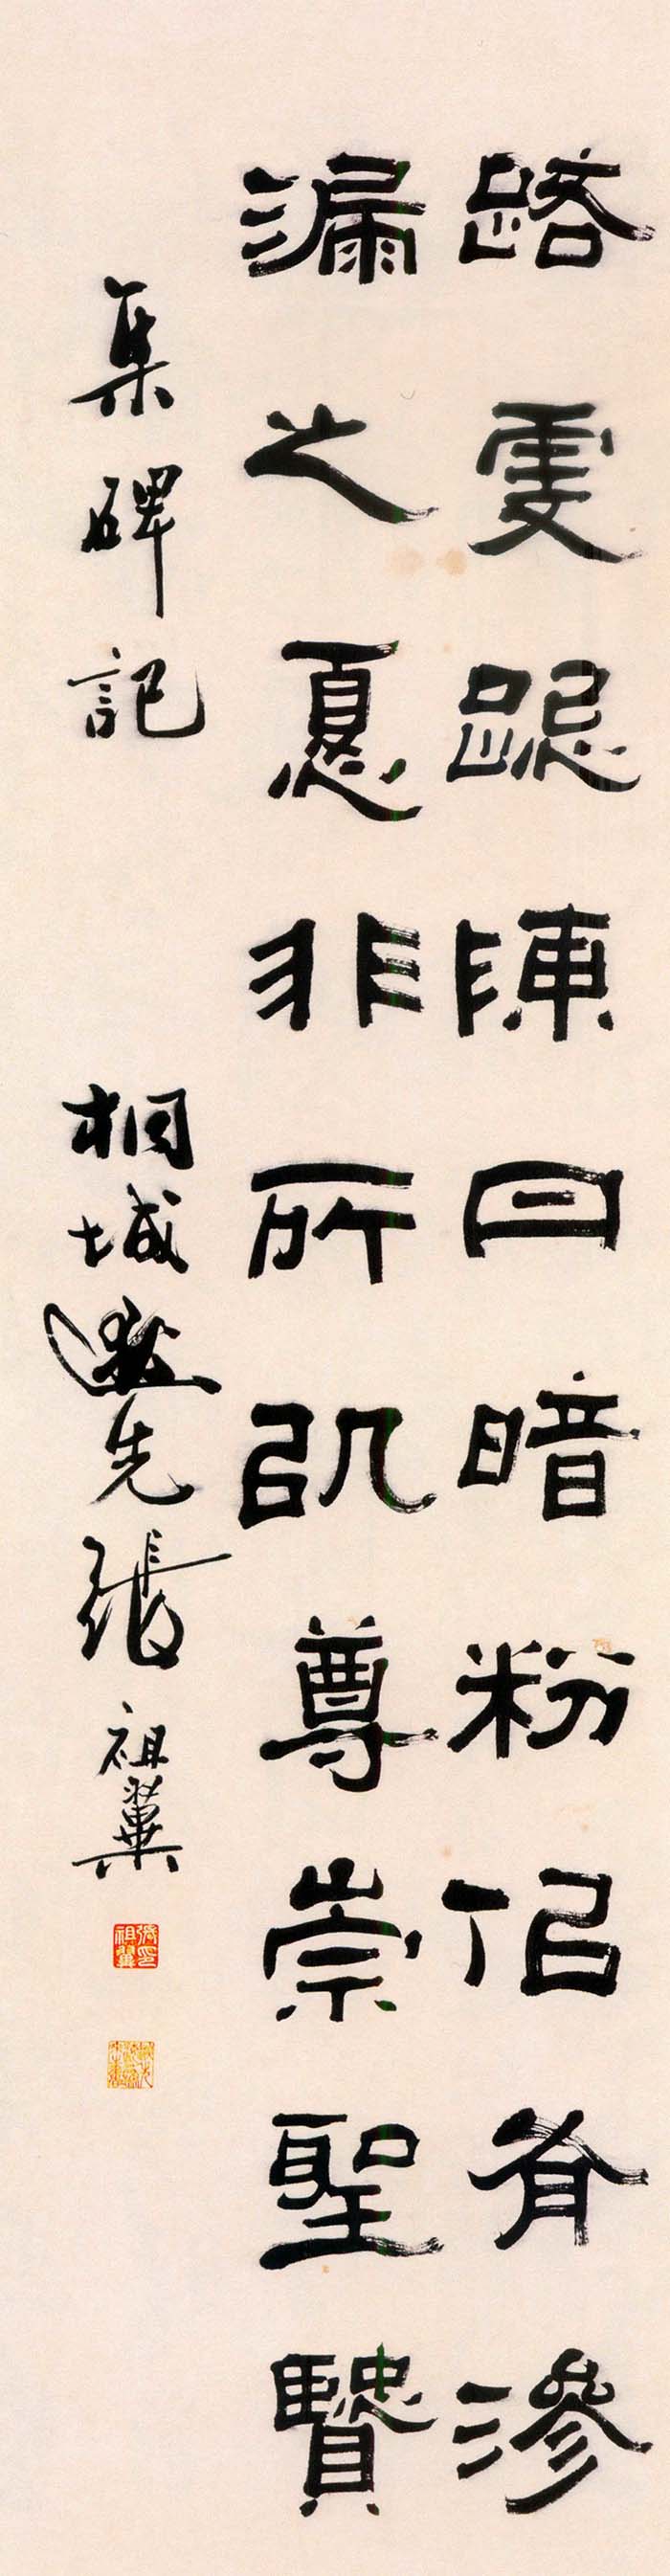 张祖翼《隶书集碑记四条屏》- 常州市博物馆藏 (图3)